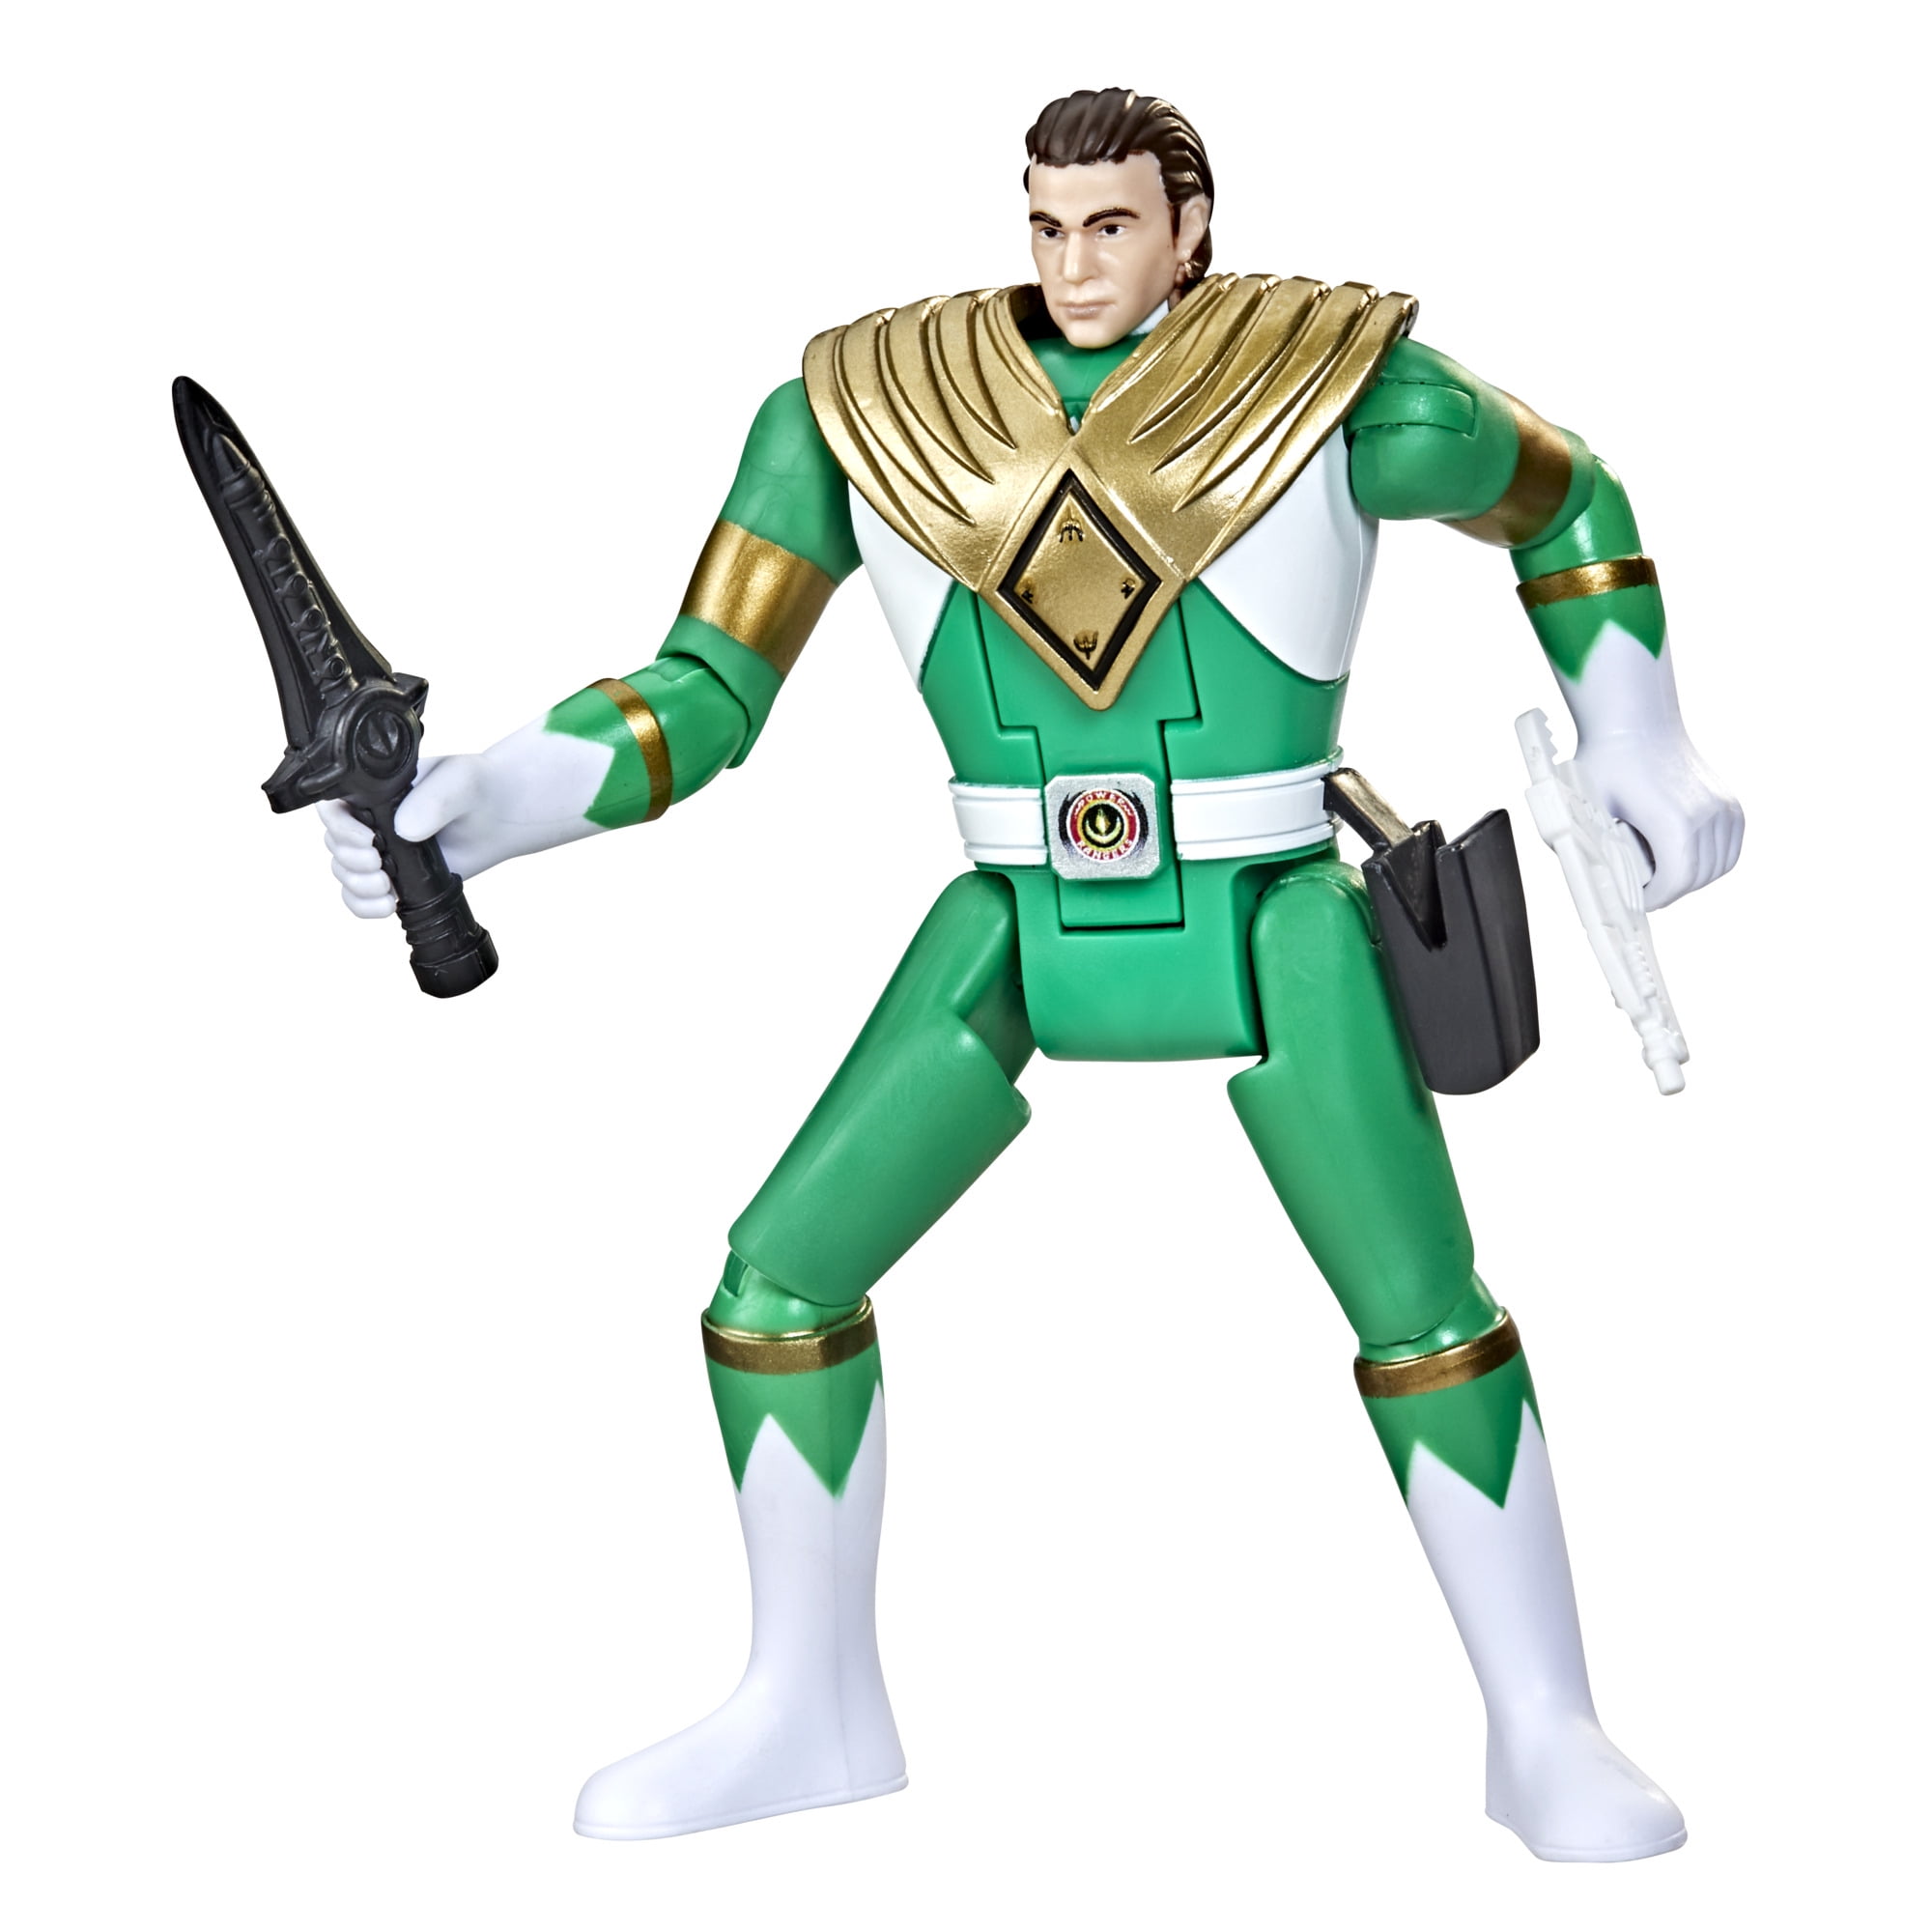 Estragos Para construir Florecer Power Rangers Retro-Morphin Green Ranger Tommy Fliphead Action Figure -  Walmart.com